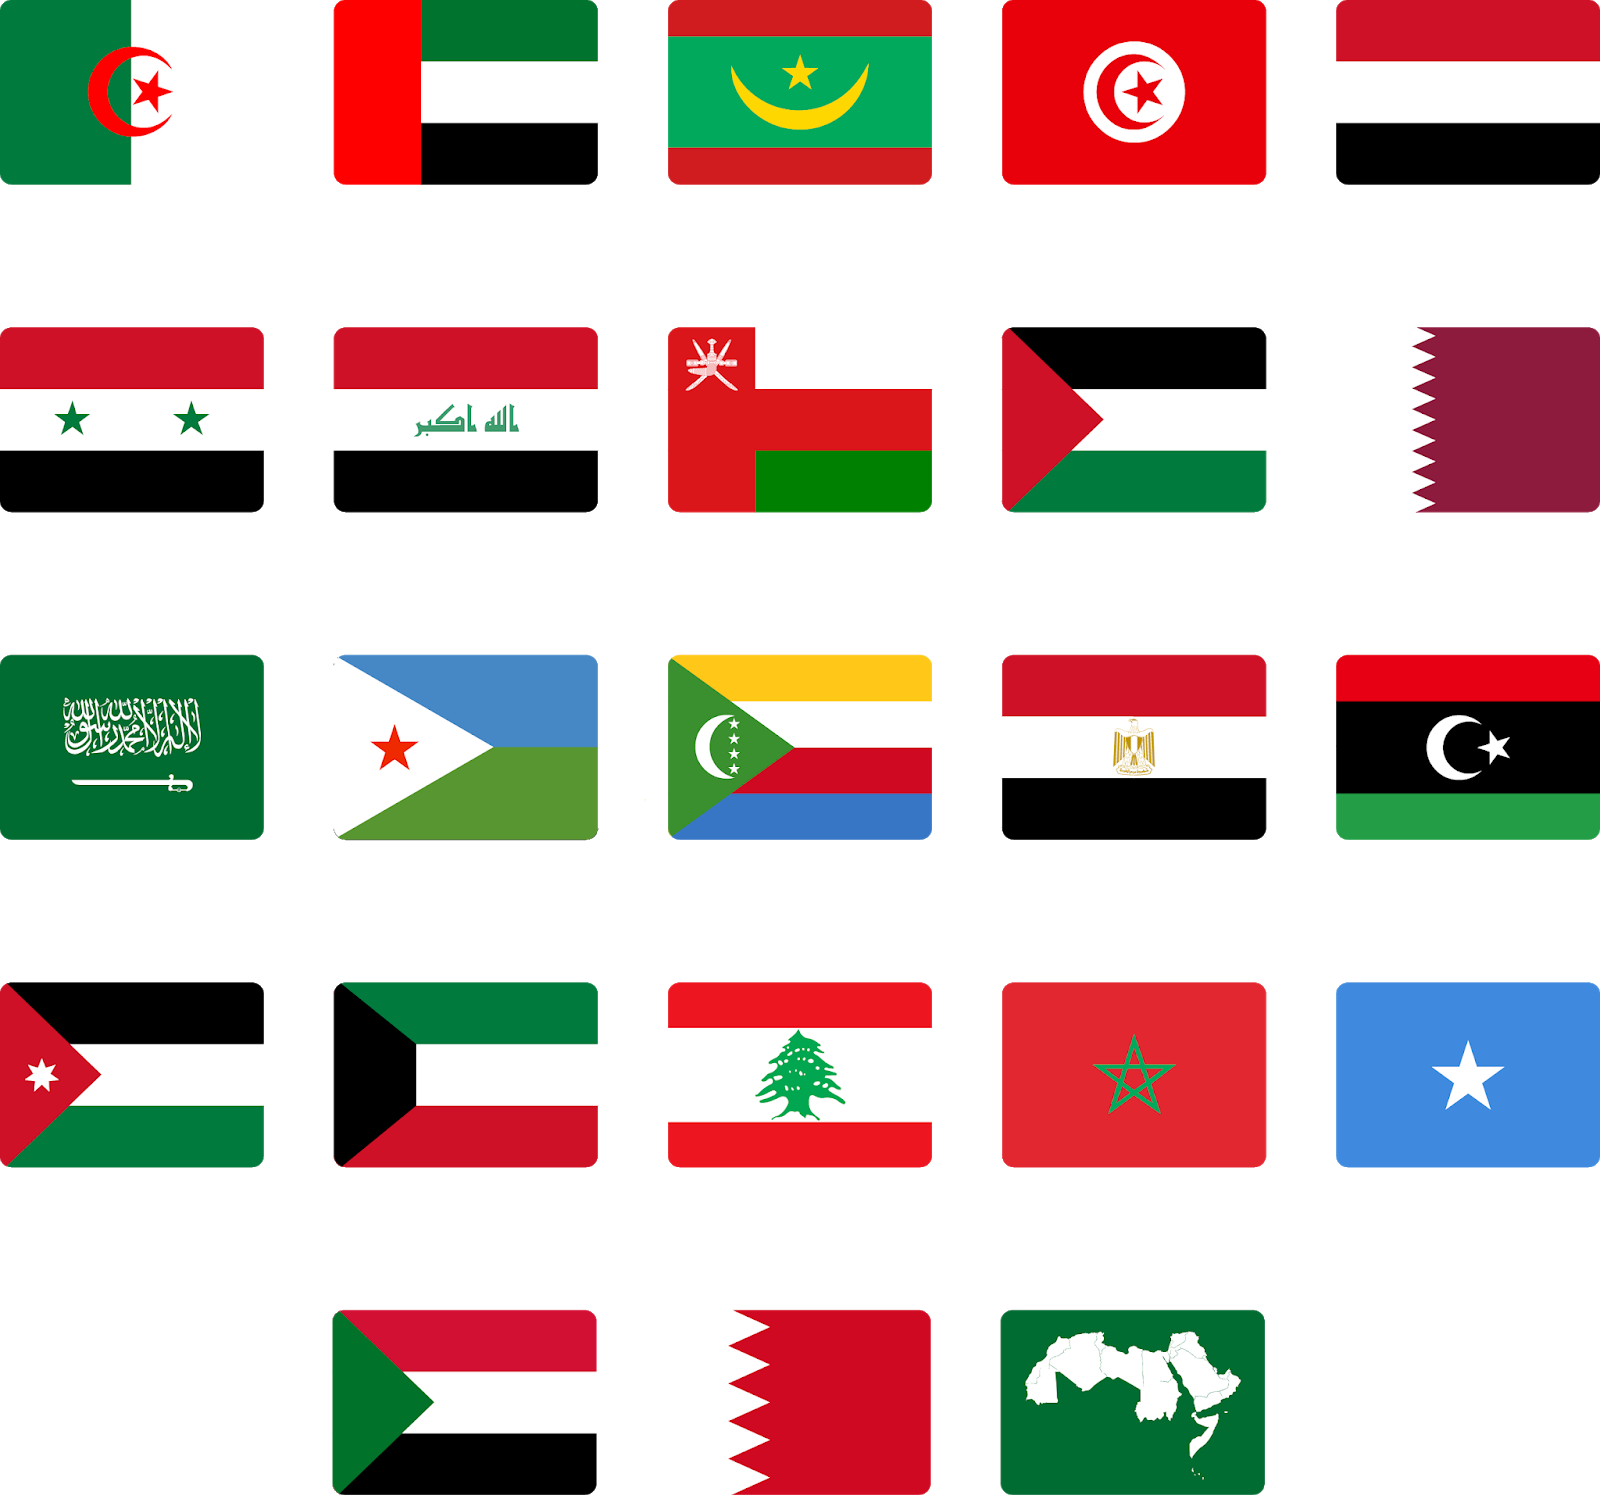 تحميل أعلام الدول العربية بصيغة png و psd مجانا الصور